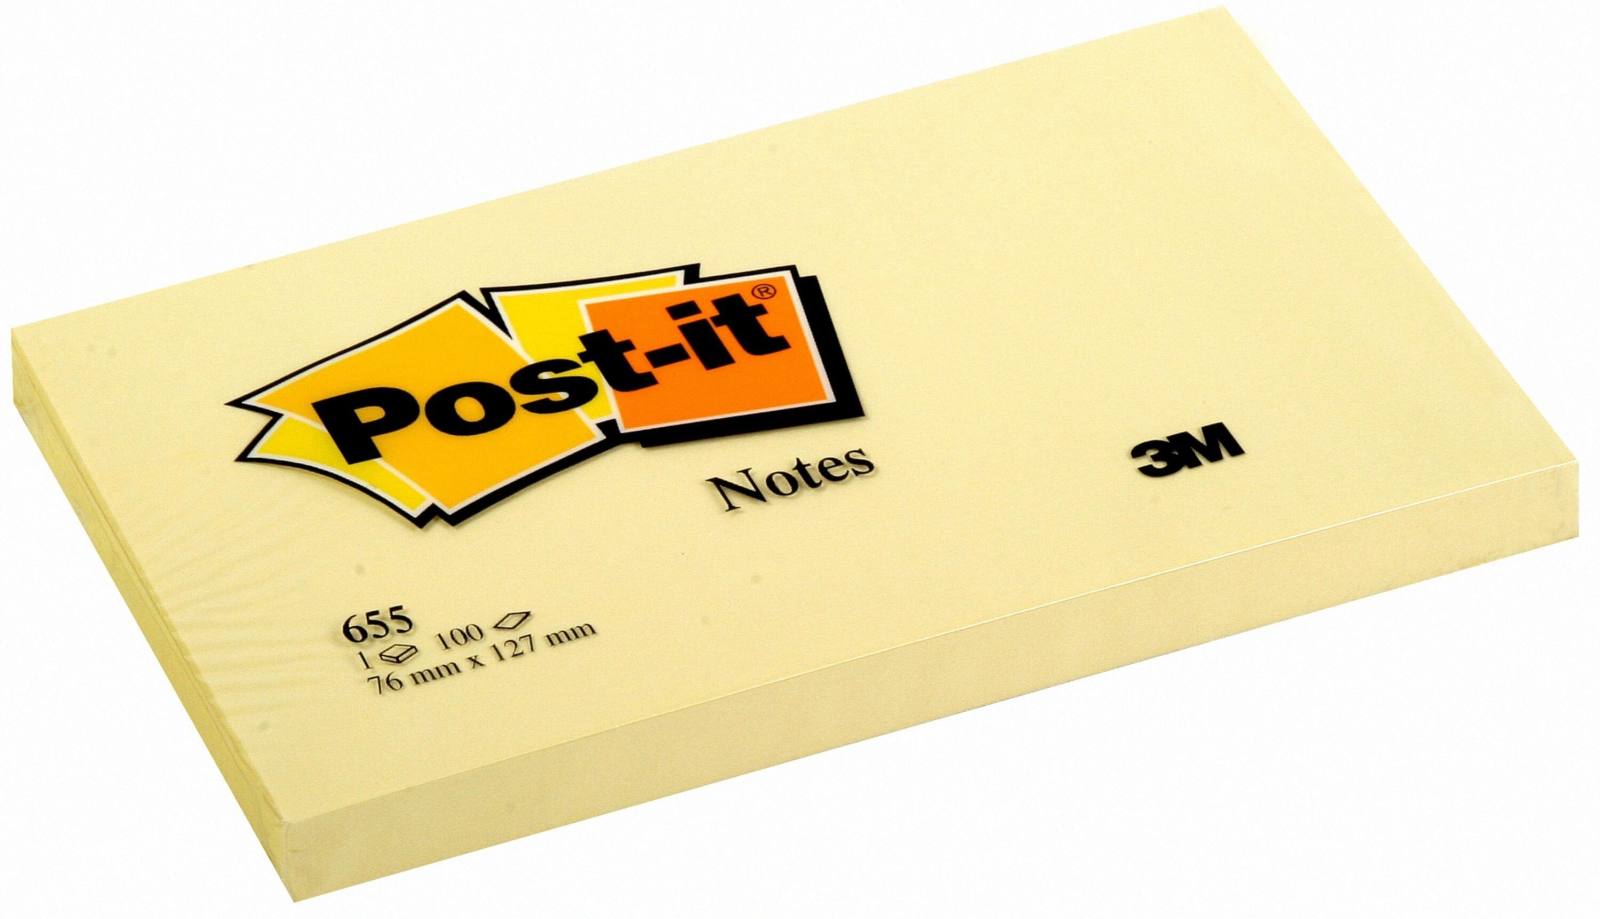 3M Post-it Notes 655, 127 mm x 76 mm, geel, 1 pak = 12x 1 pad van 100 vellen